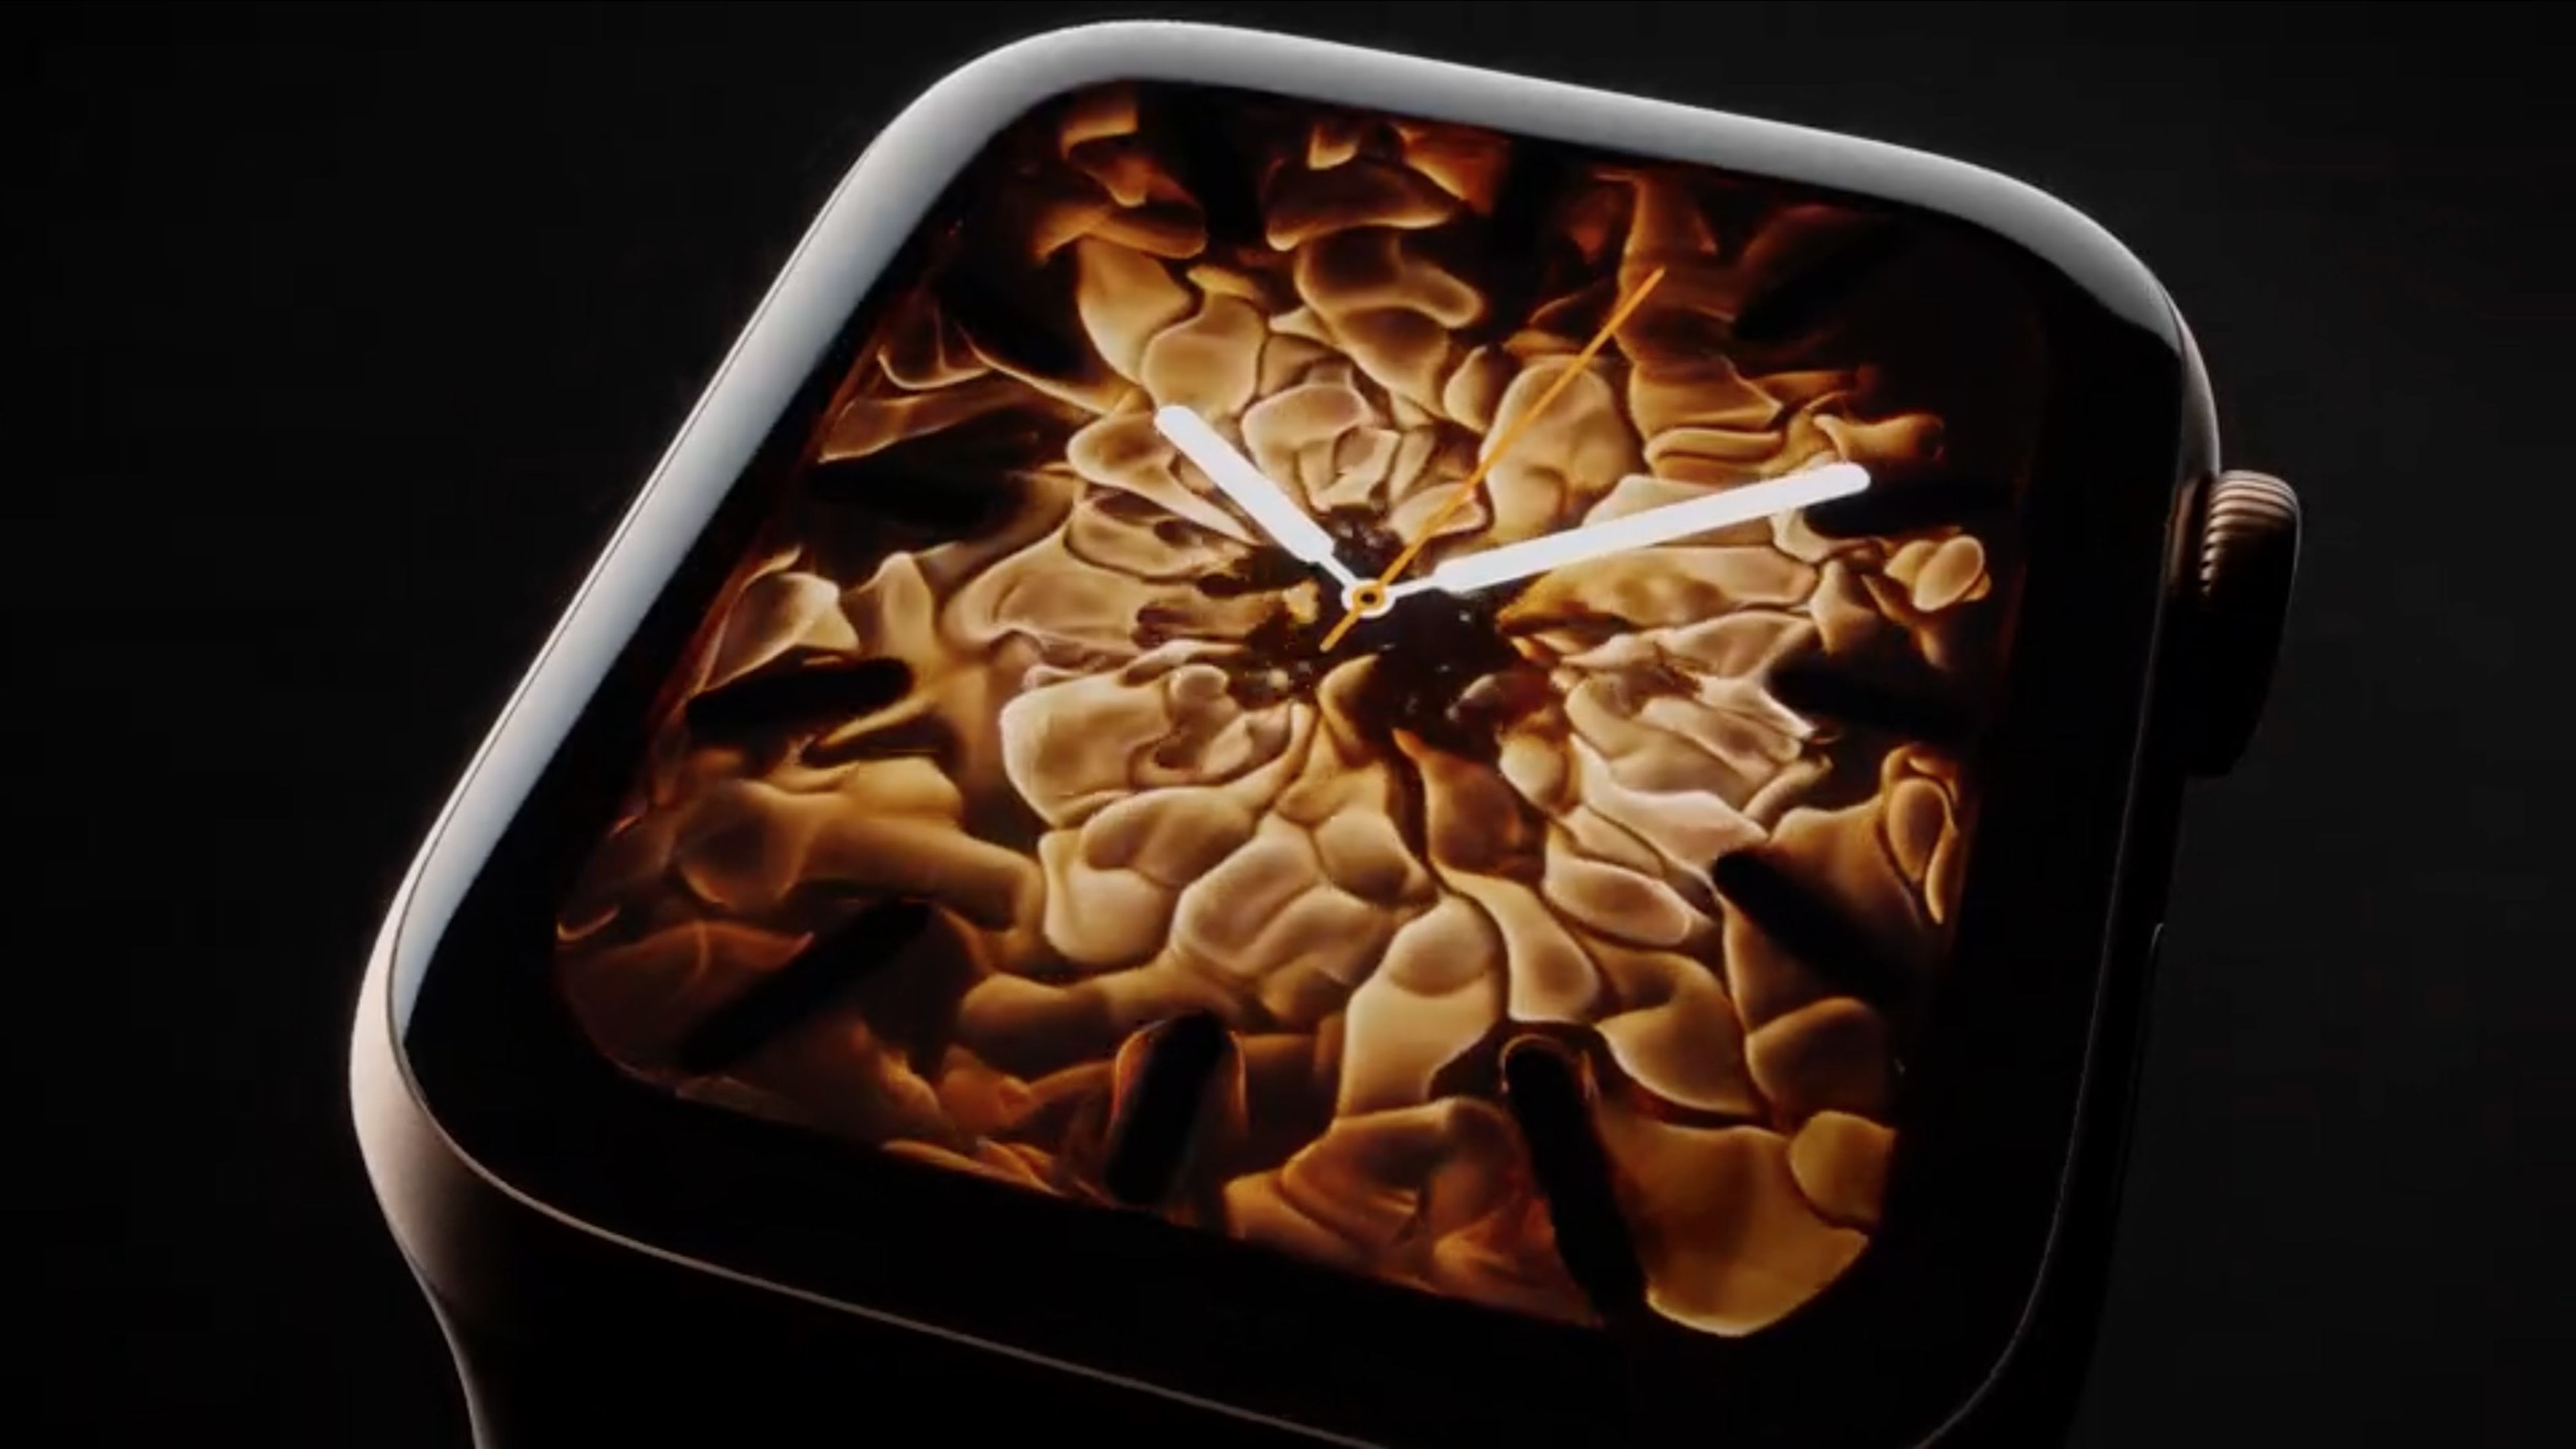 Keynote Apple 2018: Watch Series 4